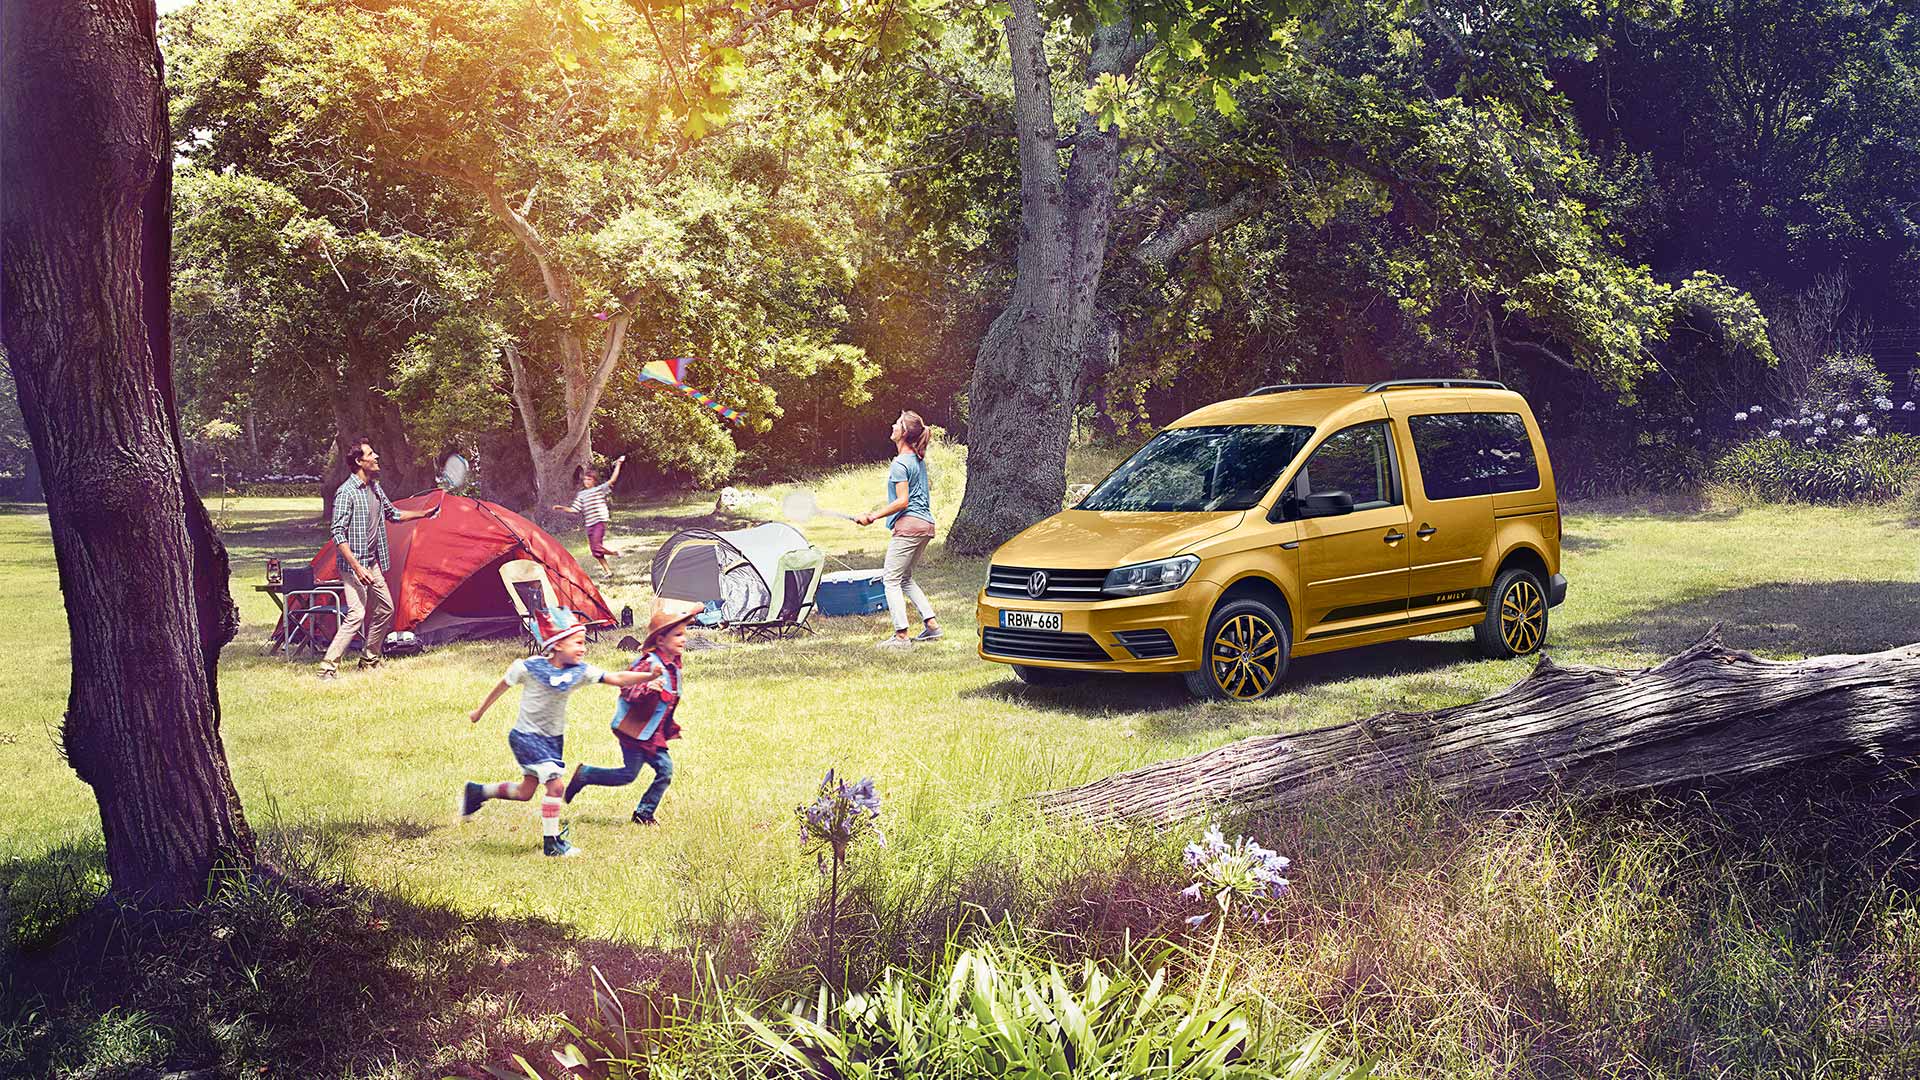 Машина пикник. Volkswagen Caddy Family. Семья Volkswagen Caddy. Семейная машина. Автомобиль на пикнике.